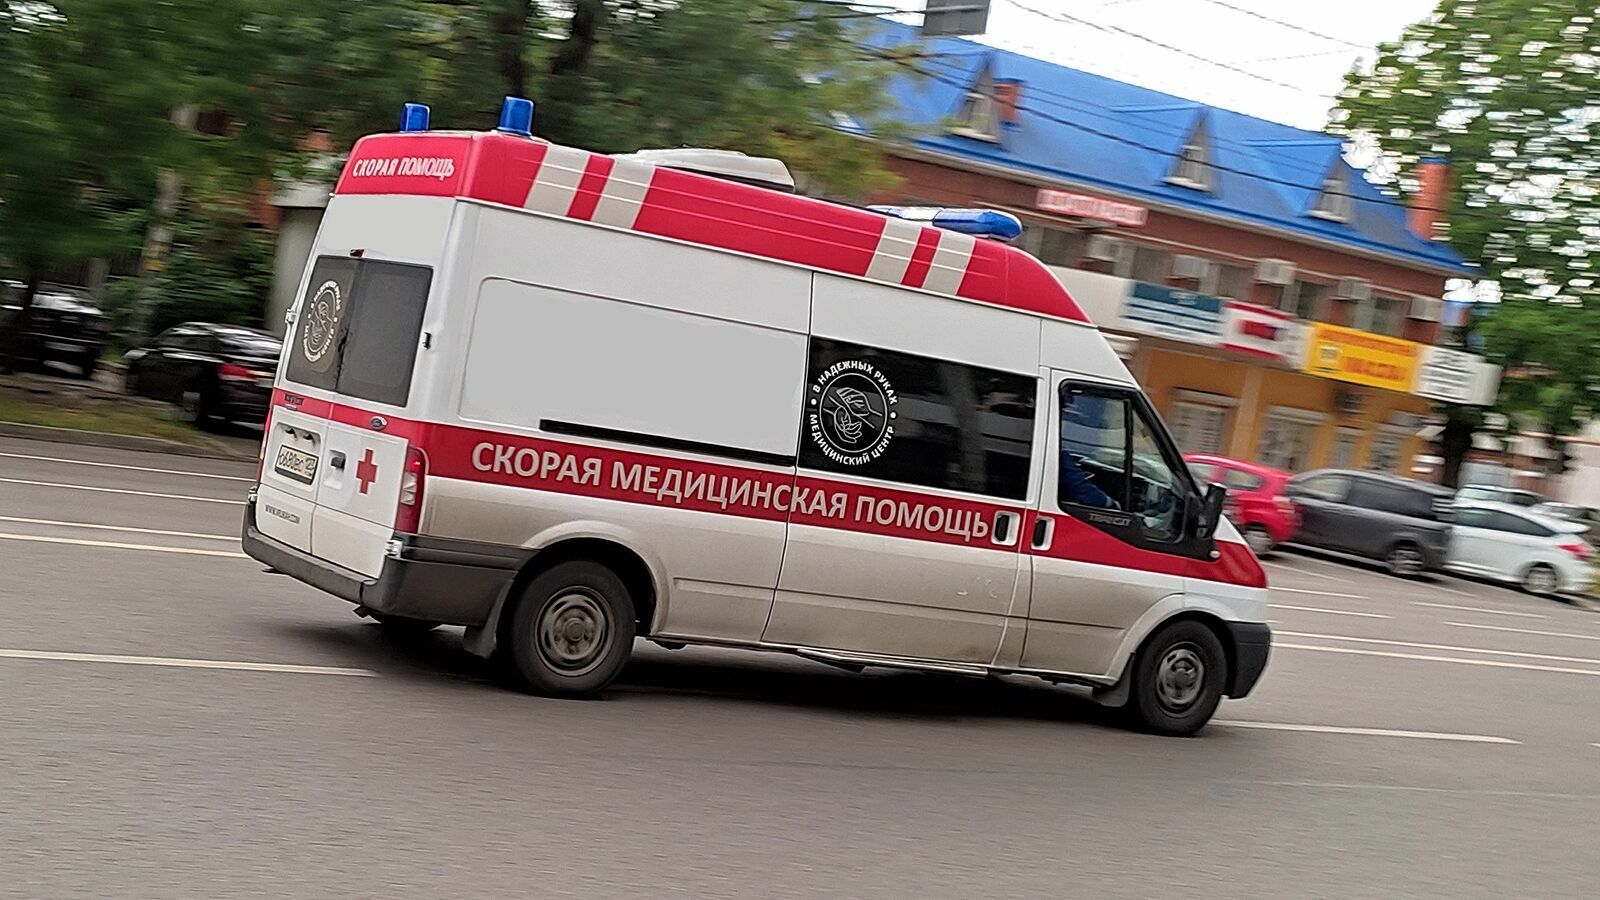 Рост численности заболевших коронавирусом: на Кубани выявили 211 заболевших